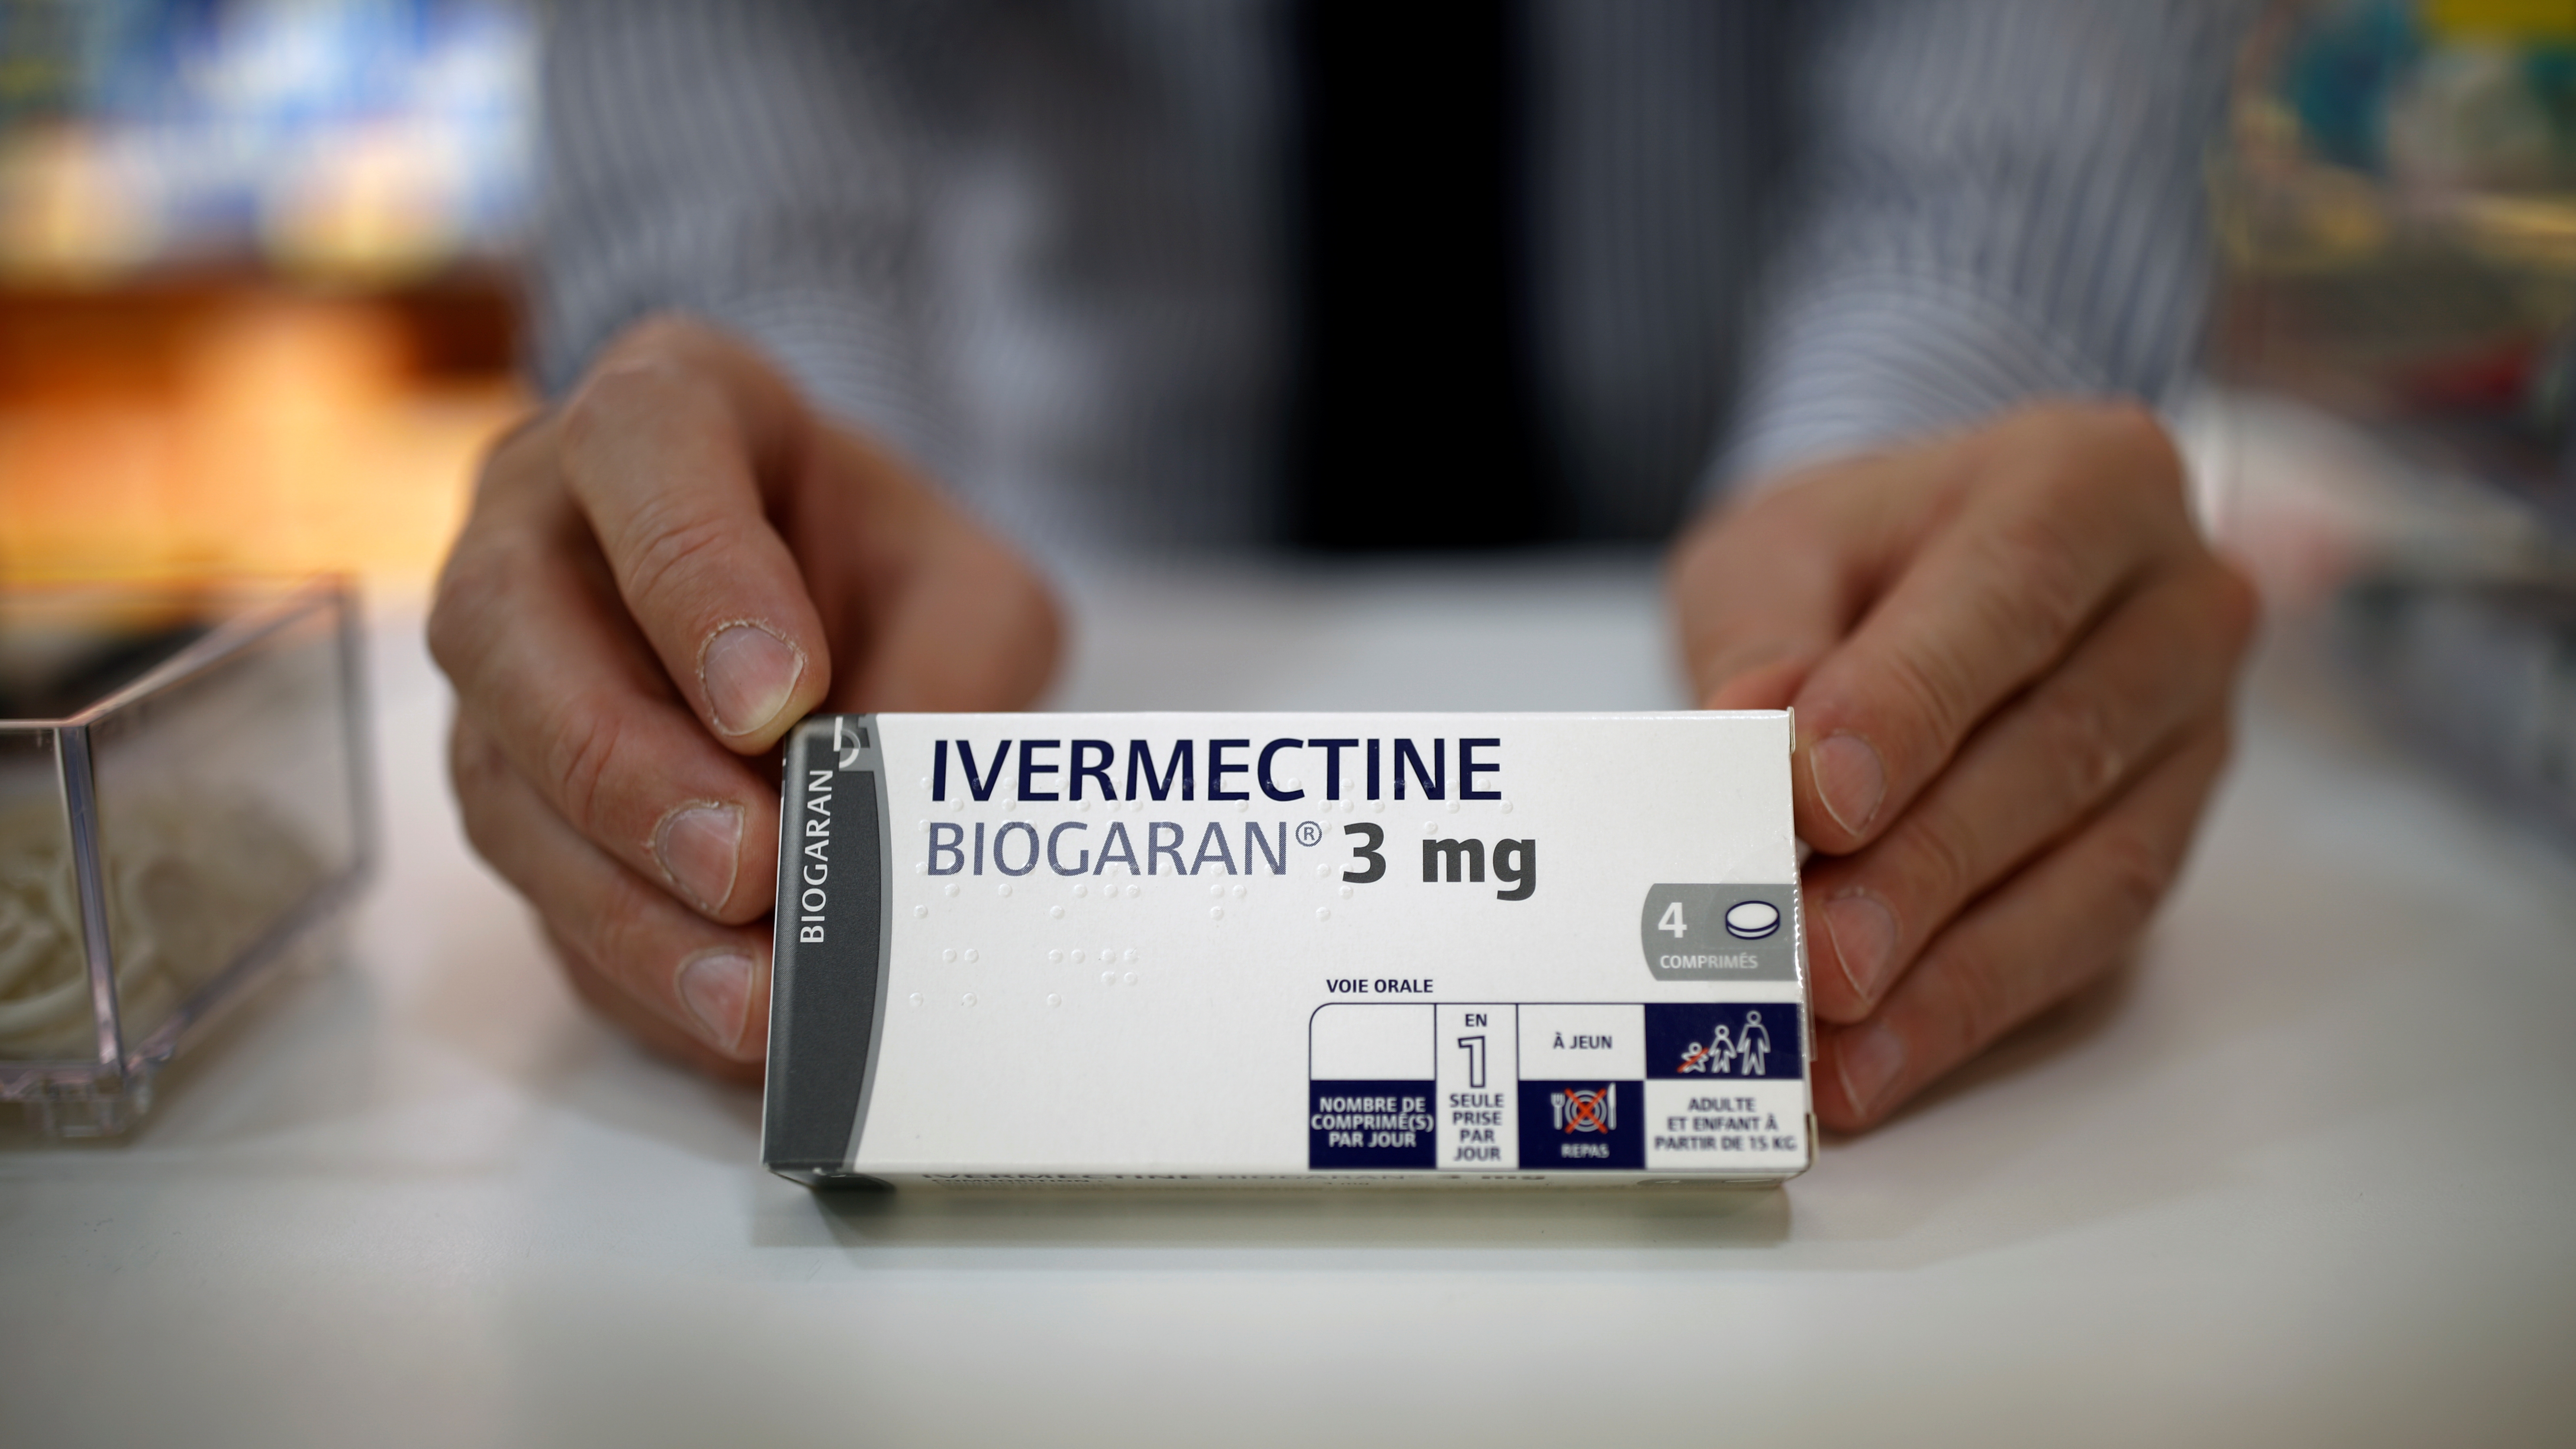 "La ivermectina no es una droga inocua y aún a dosis terapéuticas puede provocar efectos adversos, los cuales, si bien son mayormente leves, a veces pueden llegar a ser graves" (REUTERS)